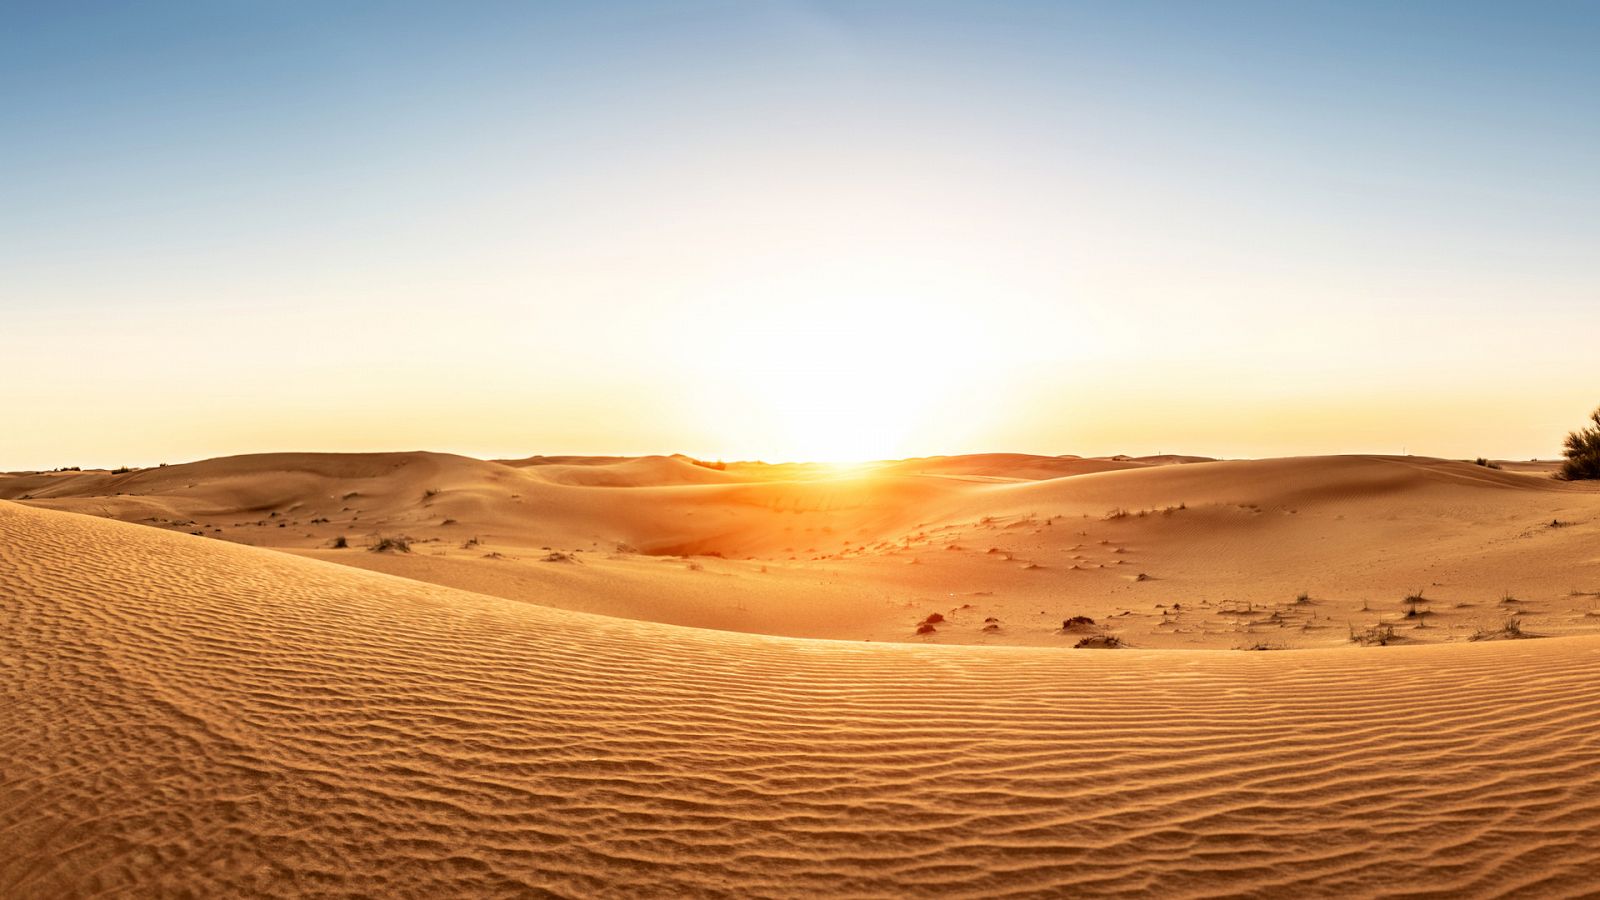 Turismo rural en el mundo - Emiratos Árabes Unidos: Desde Dubái hacia el desierto de Arabia - Documental en RTVE